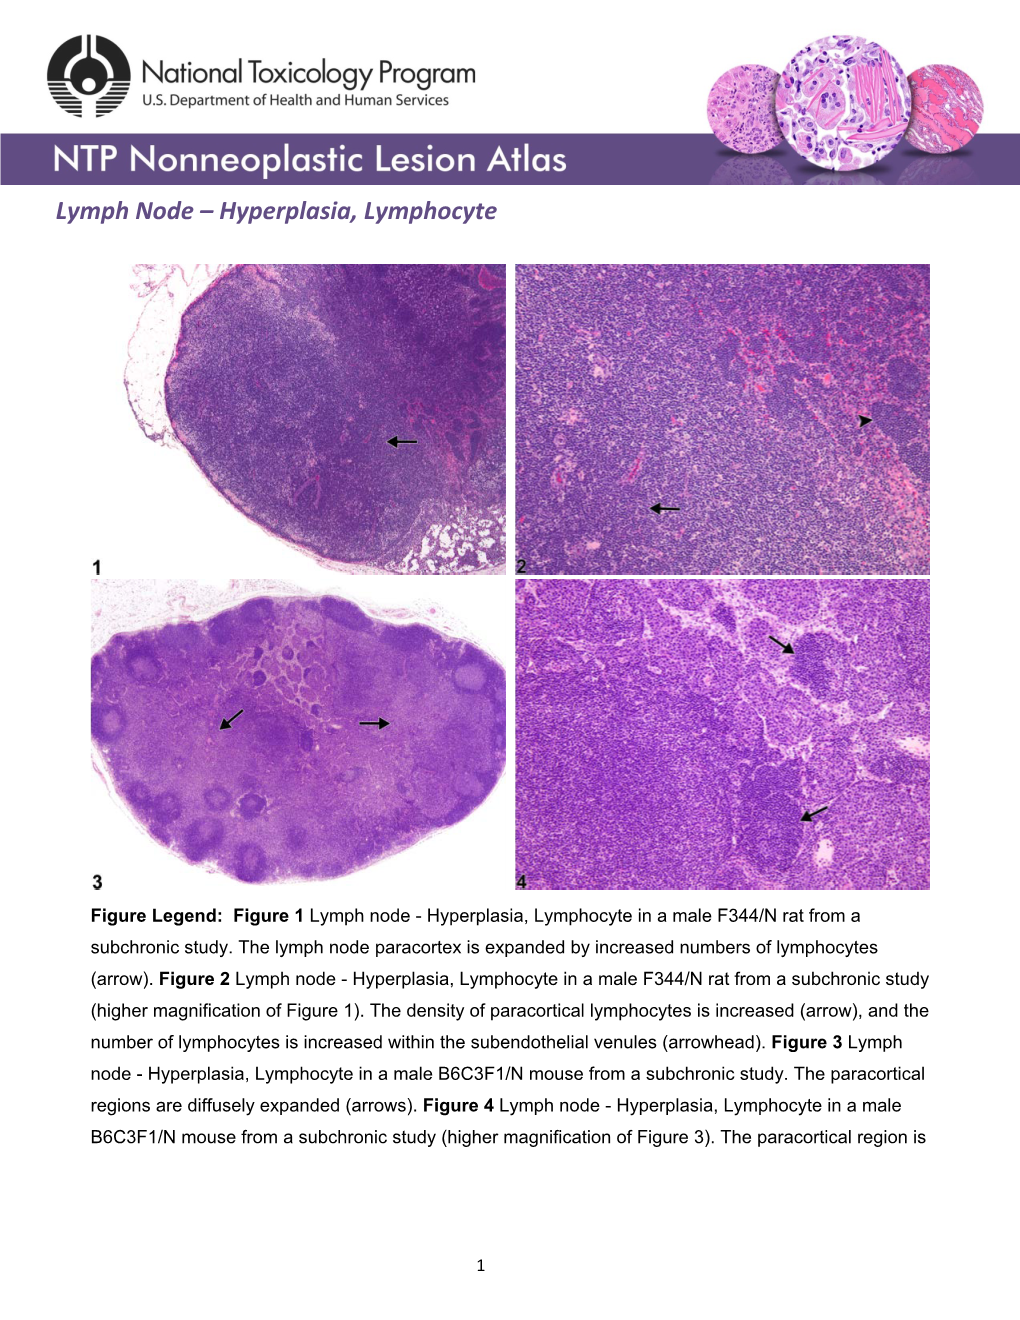 Lymph Node – Hyperplasia, Lymphocyte